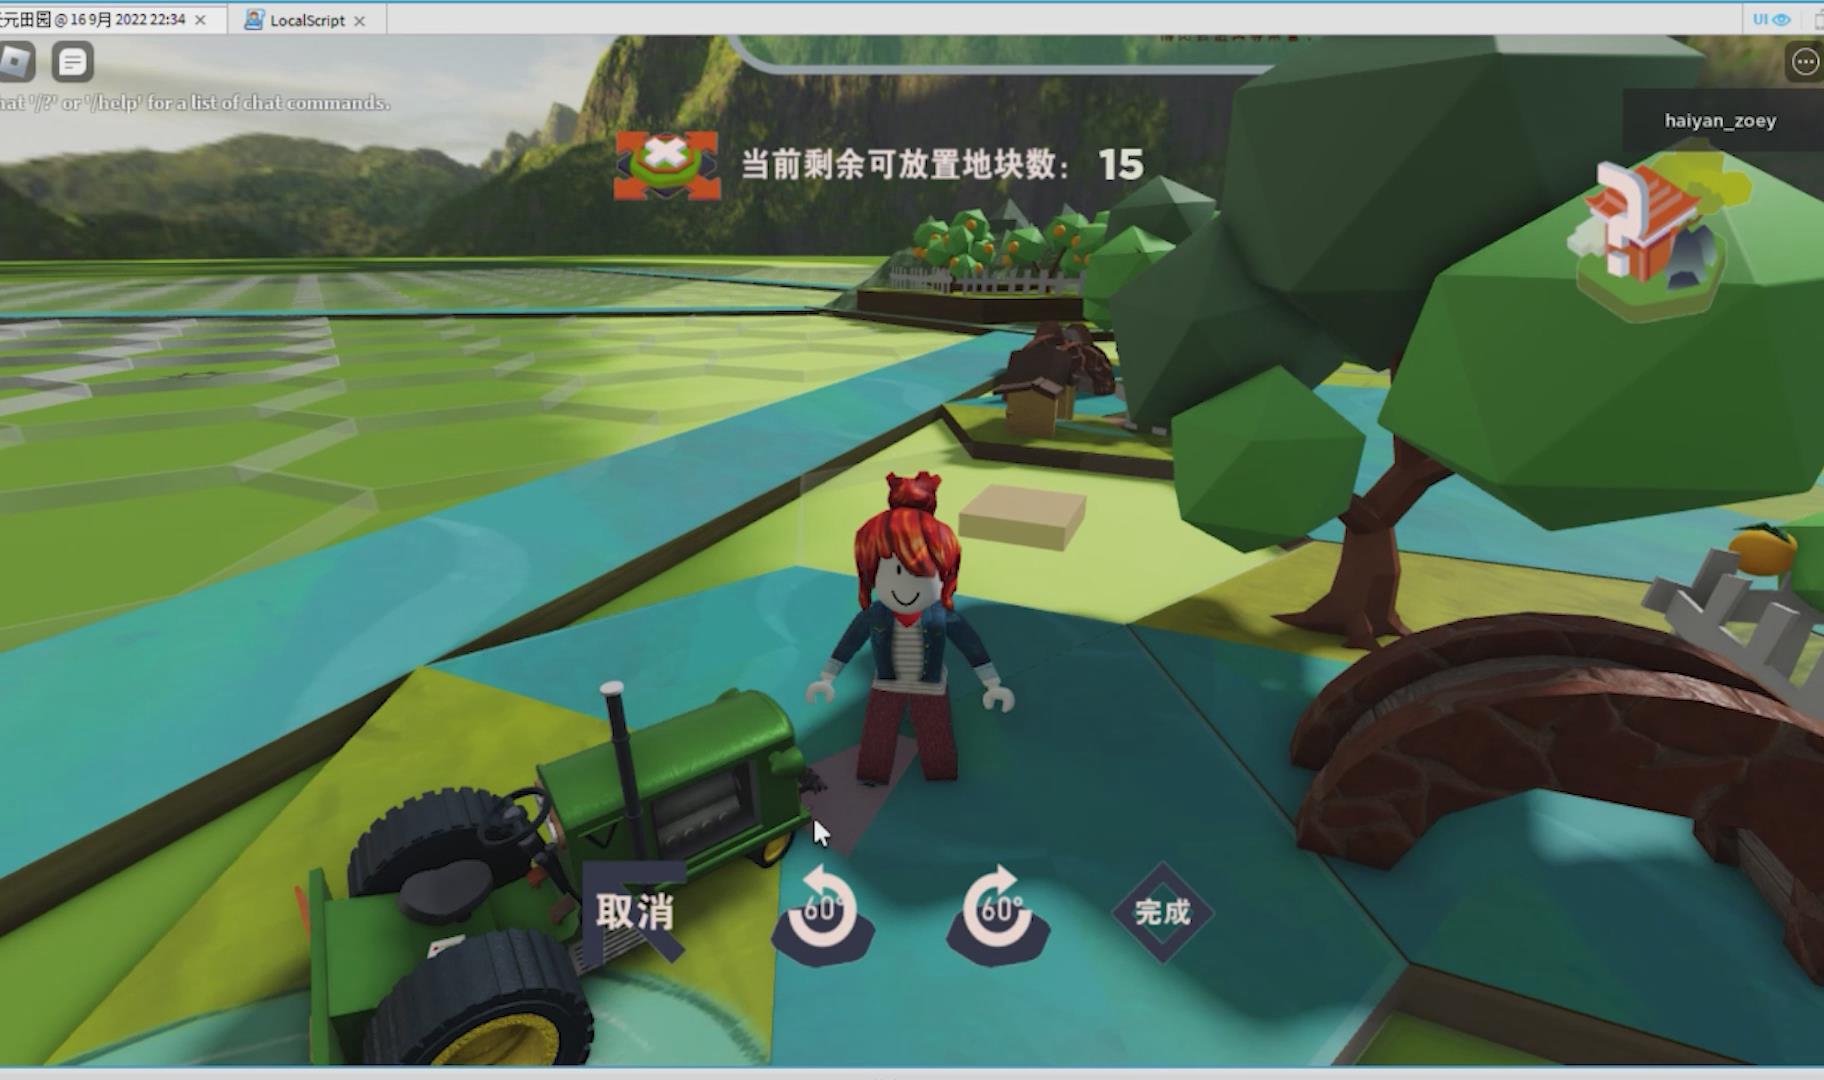 虚拟现实与游戏竞赛作品——天元田园